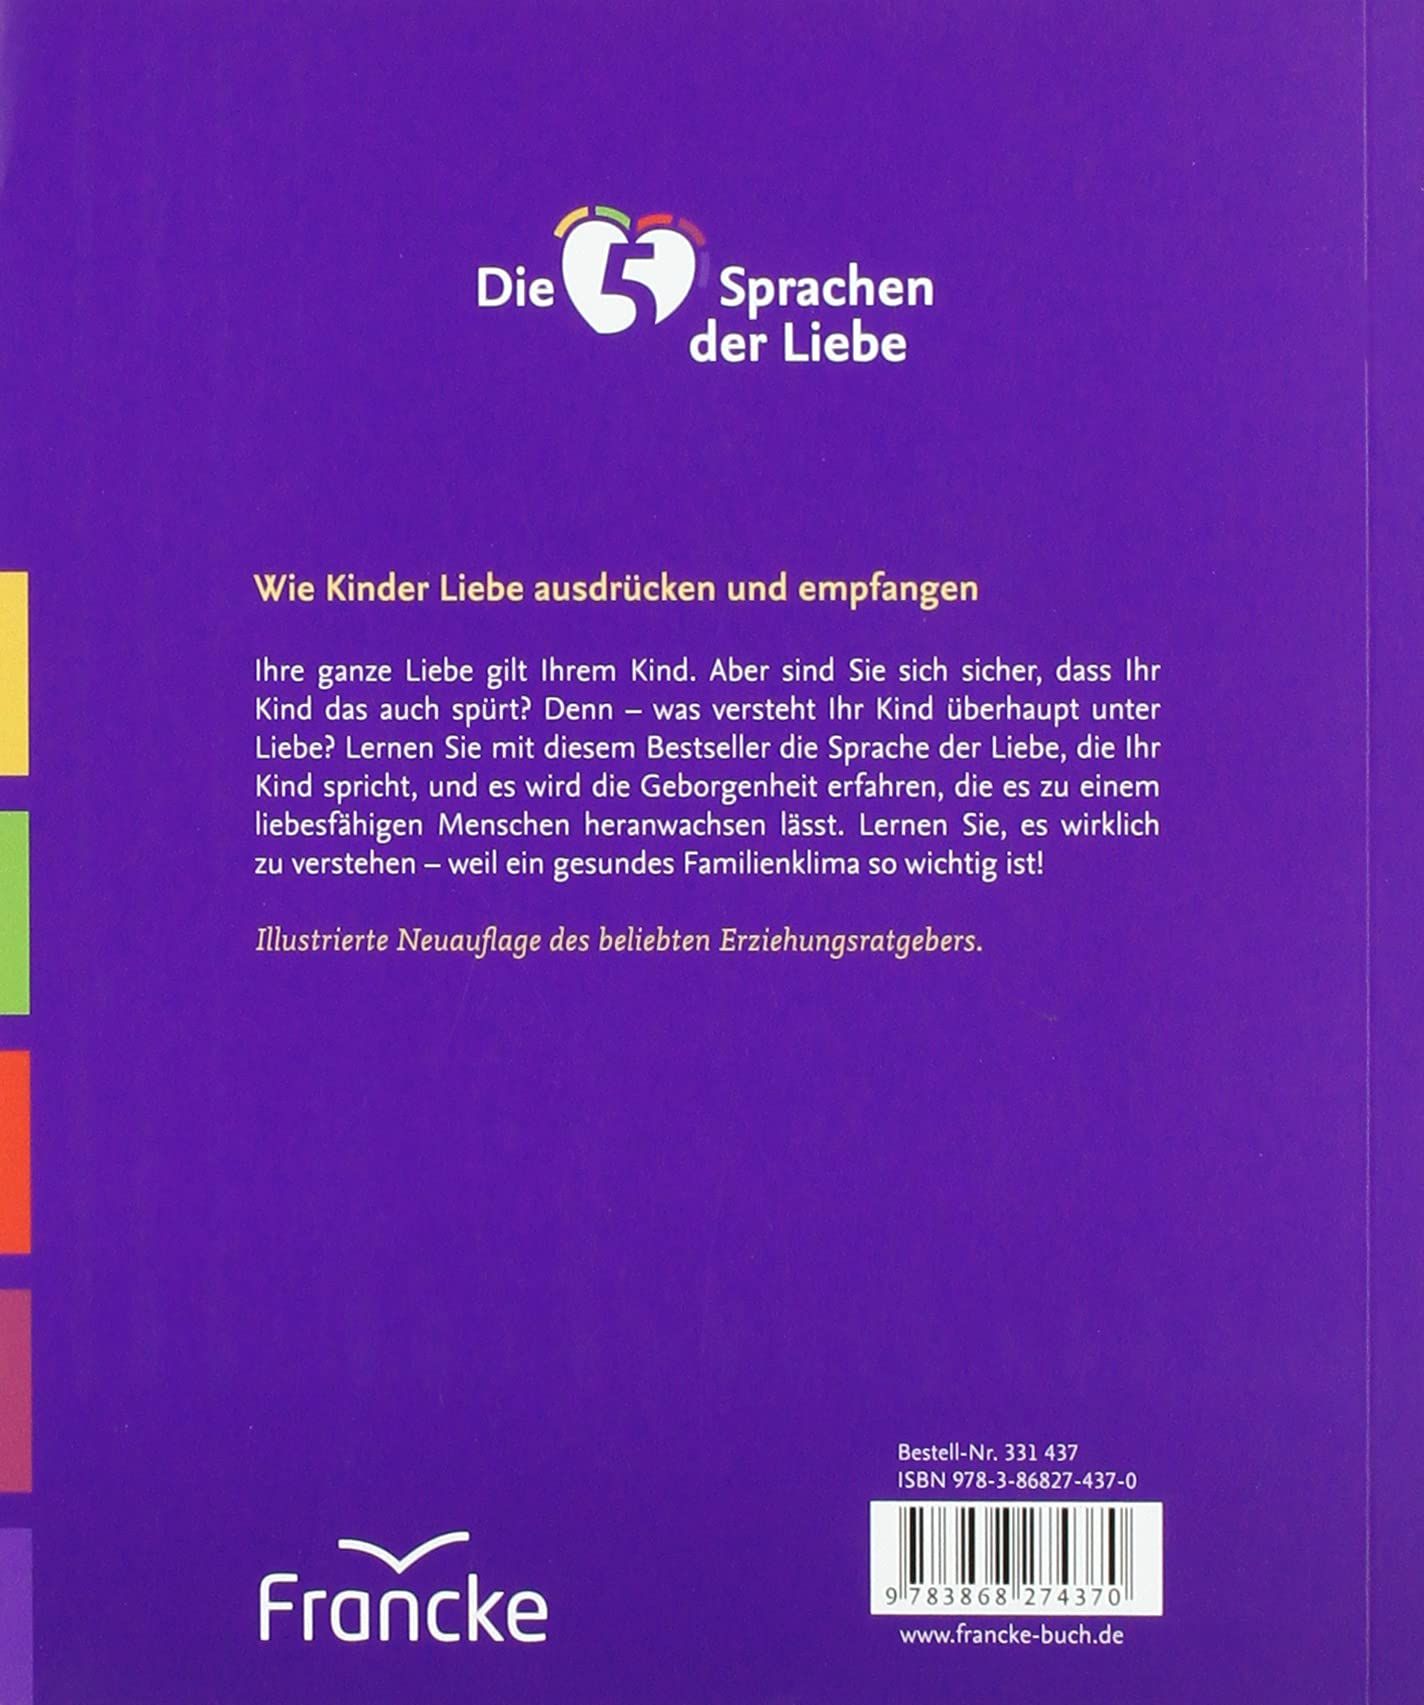 Kinder- & Jugendbücher - Büchersortiment - Gary Chapman: Die 5 Sprachen der Liebe für Kinder